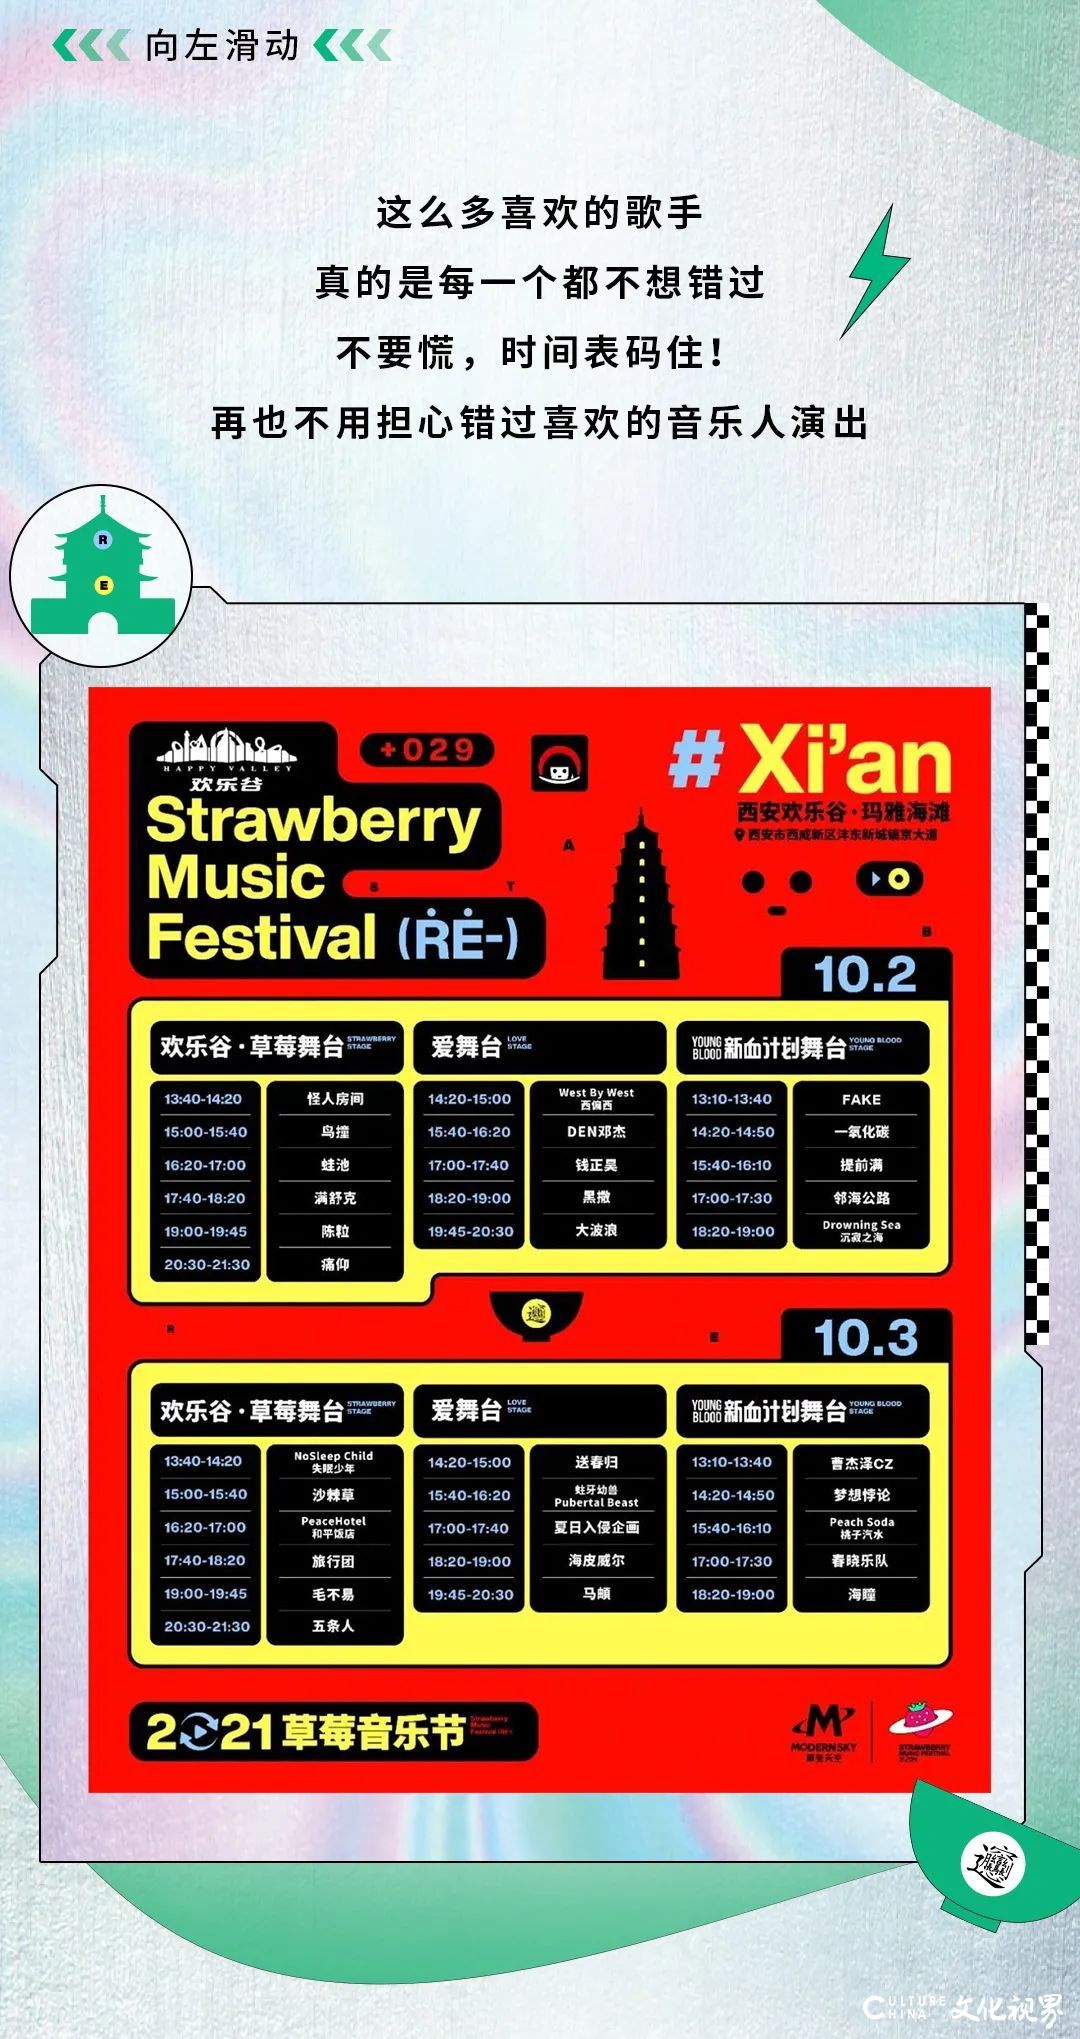 青岛啤酒x草莓音乐节西安站即将嗨翻国庆假期